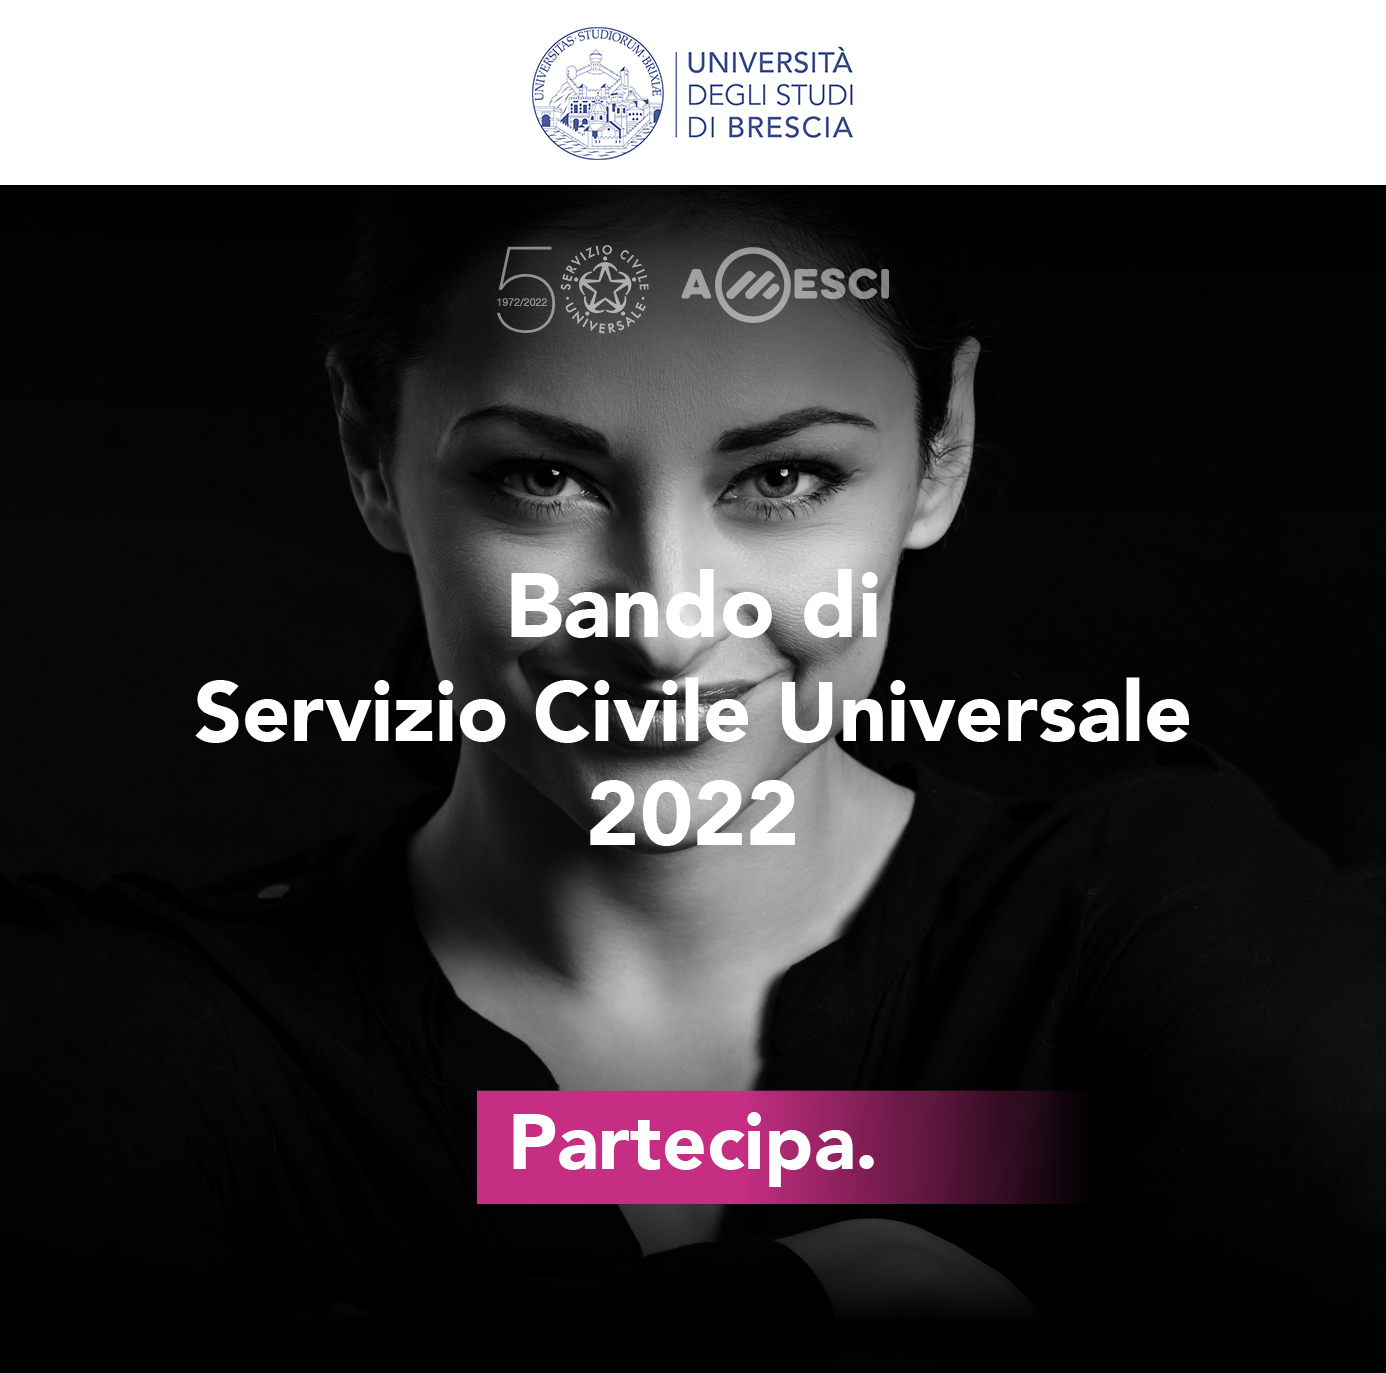 Bando di servizio civile universale 2022